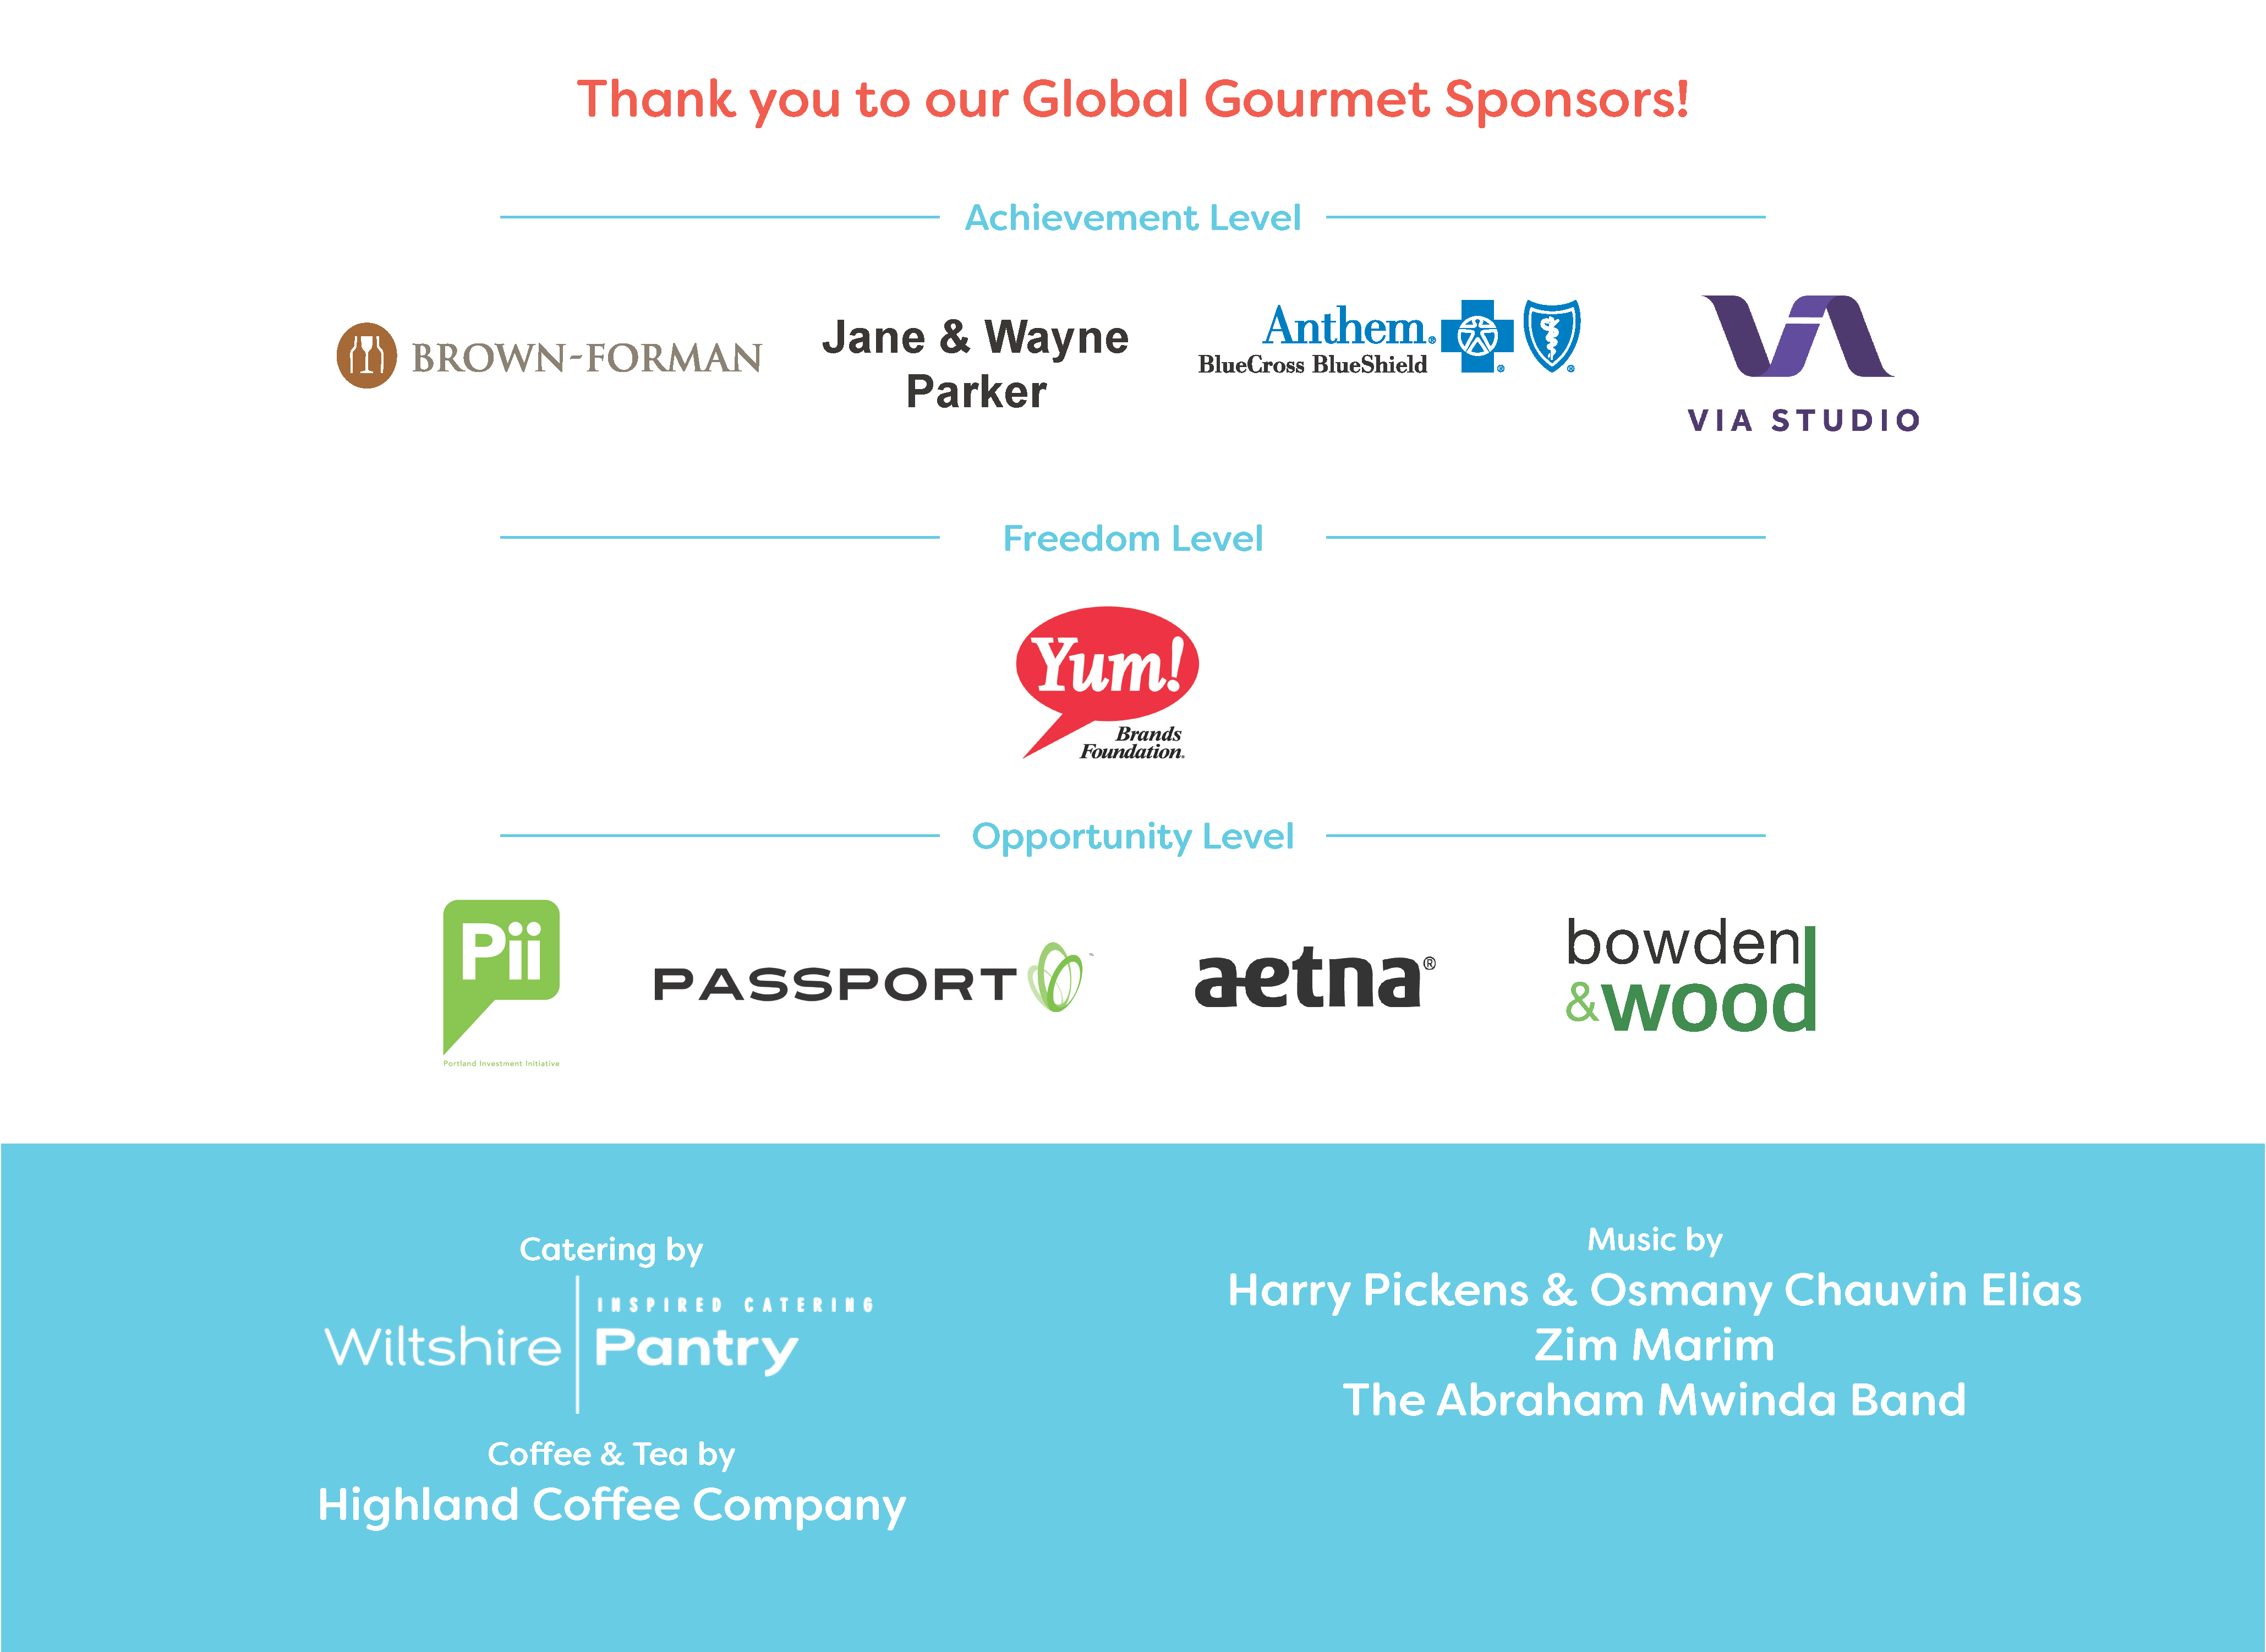 Global Gourmet sponsors